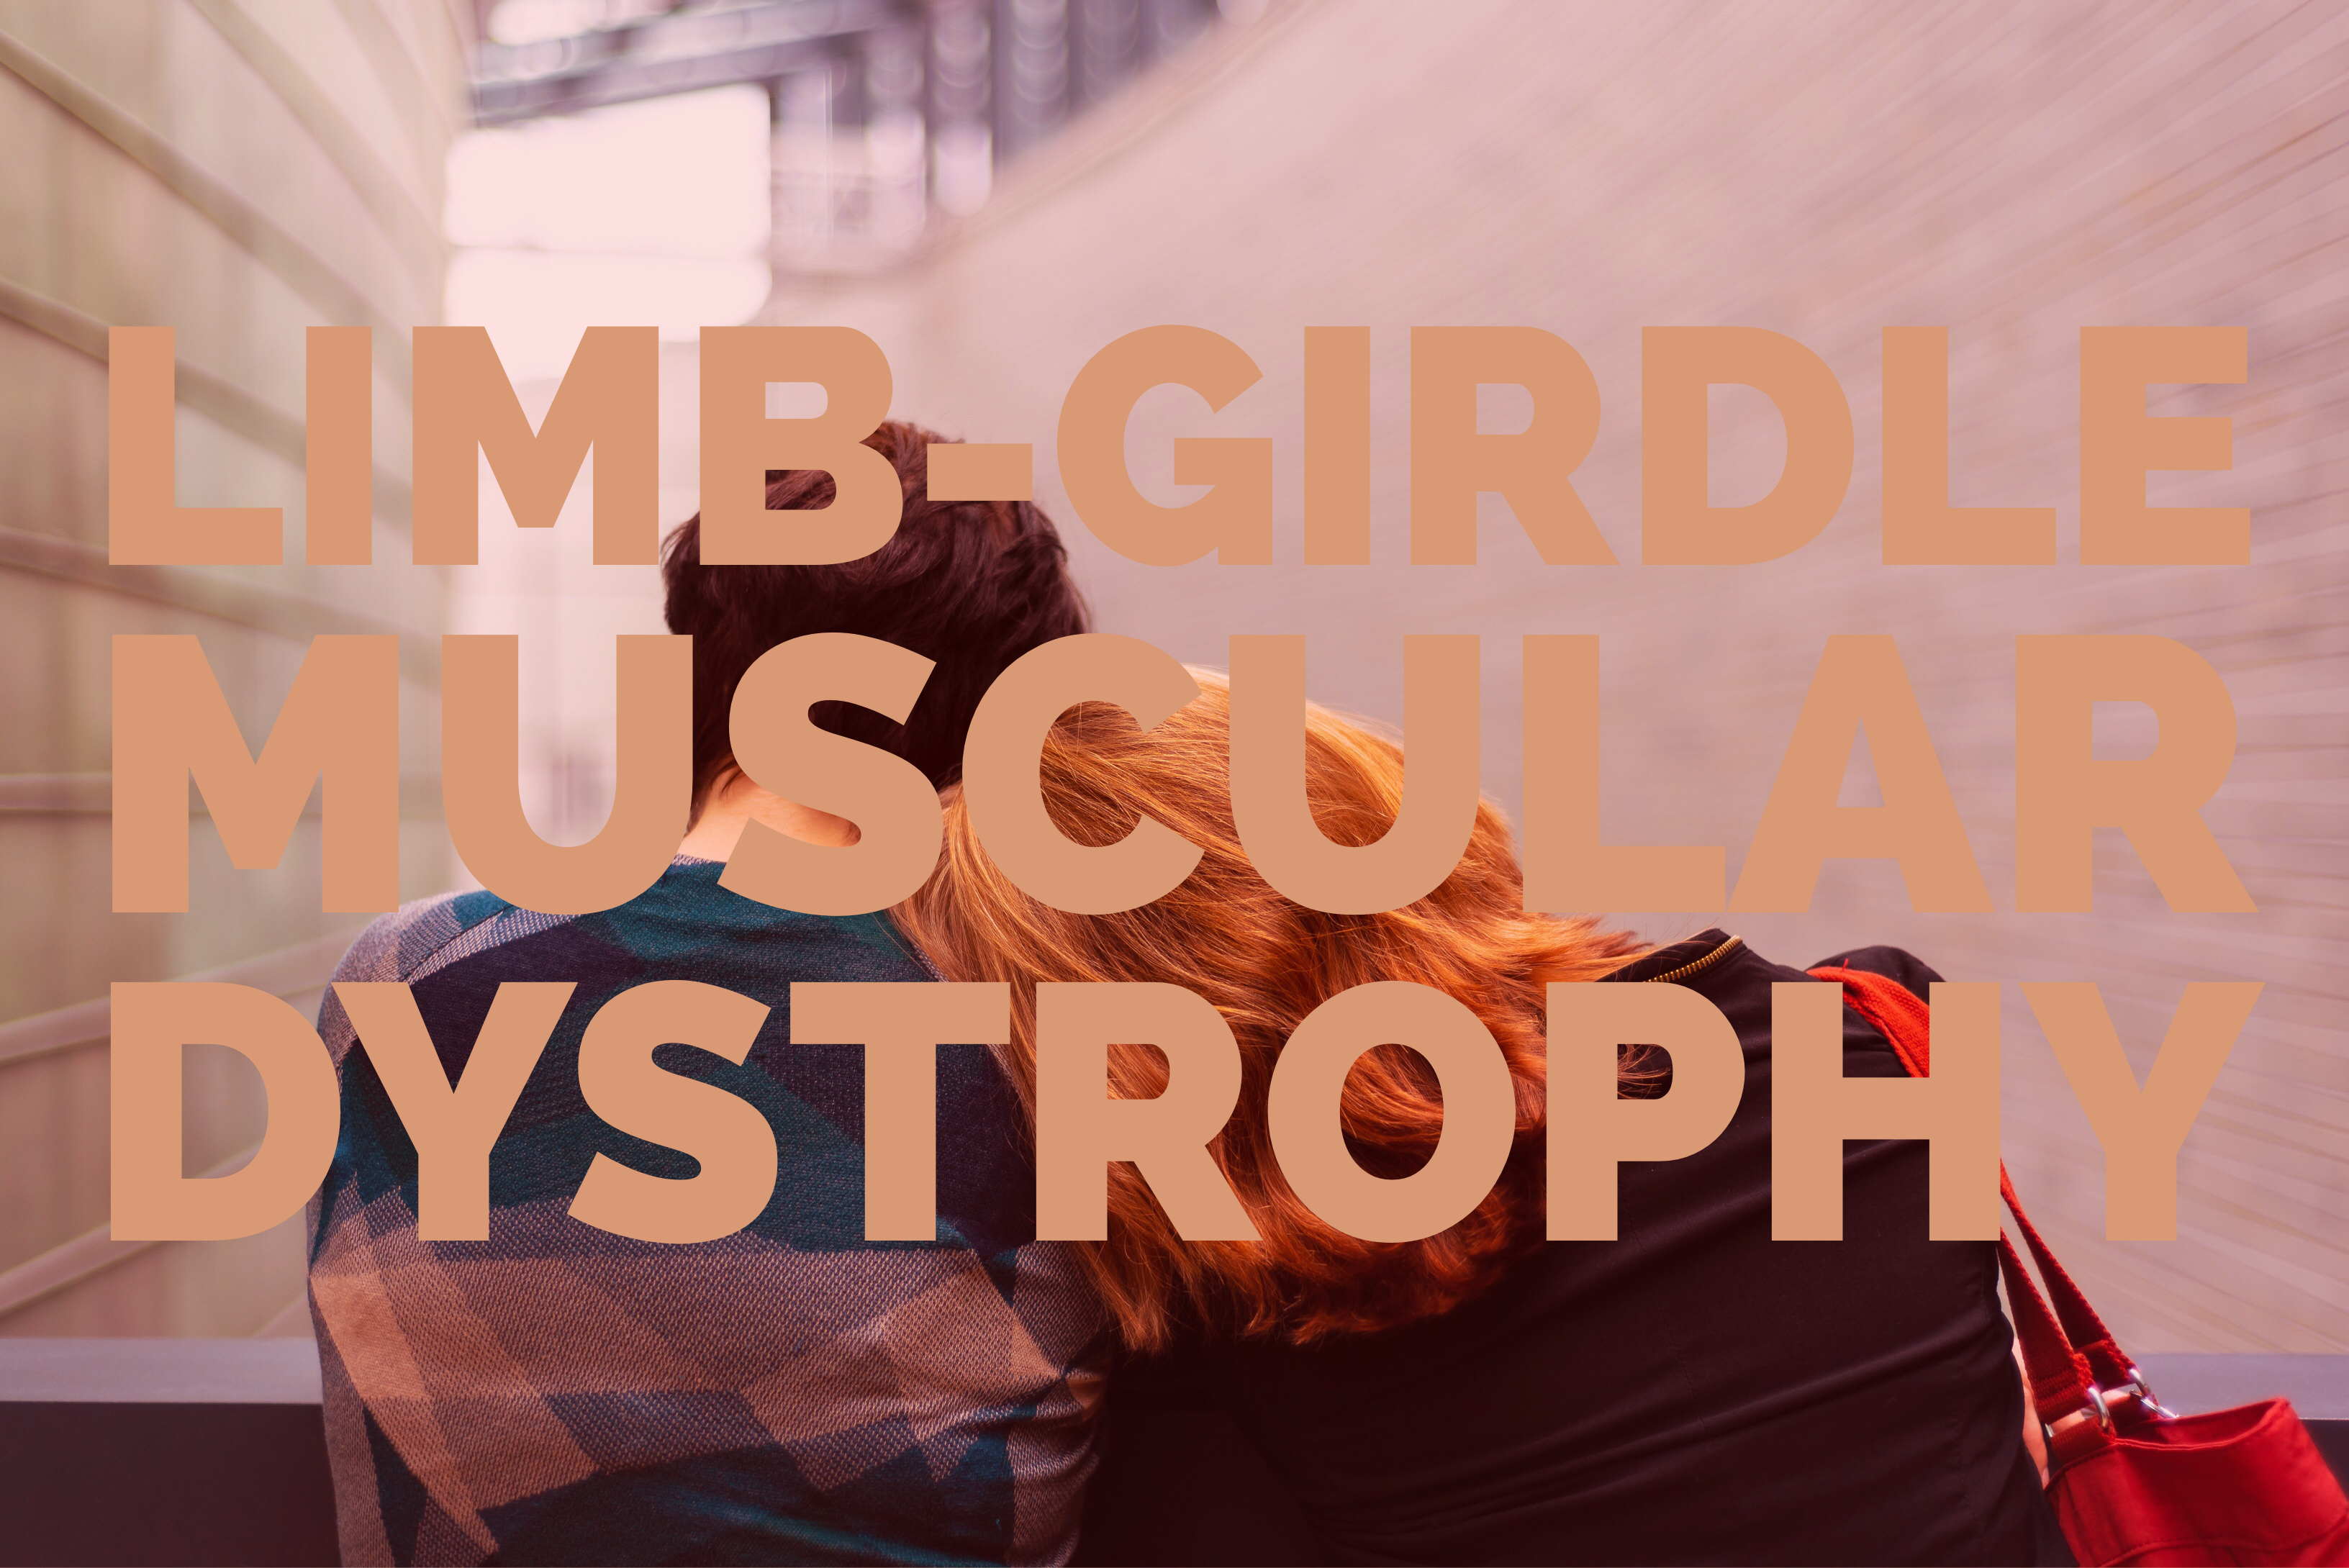 Limb Girdle Muscular Dystrophy